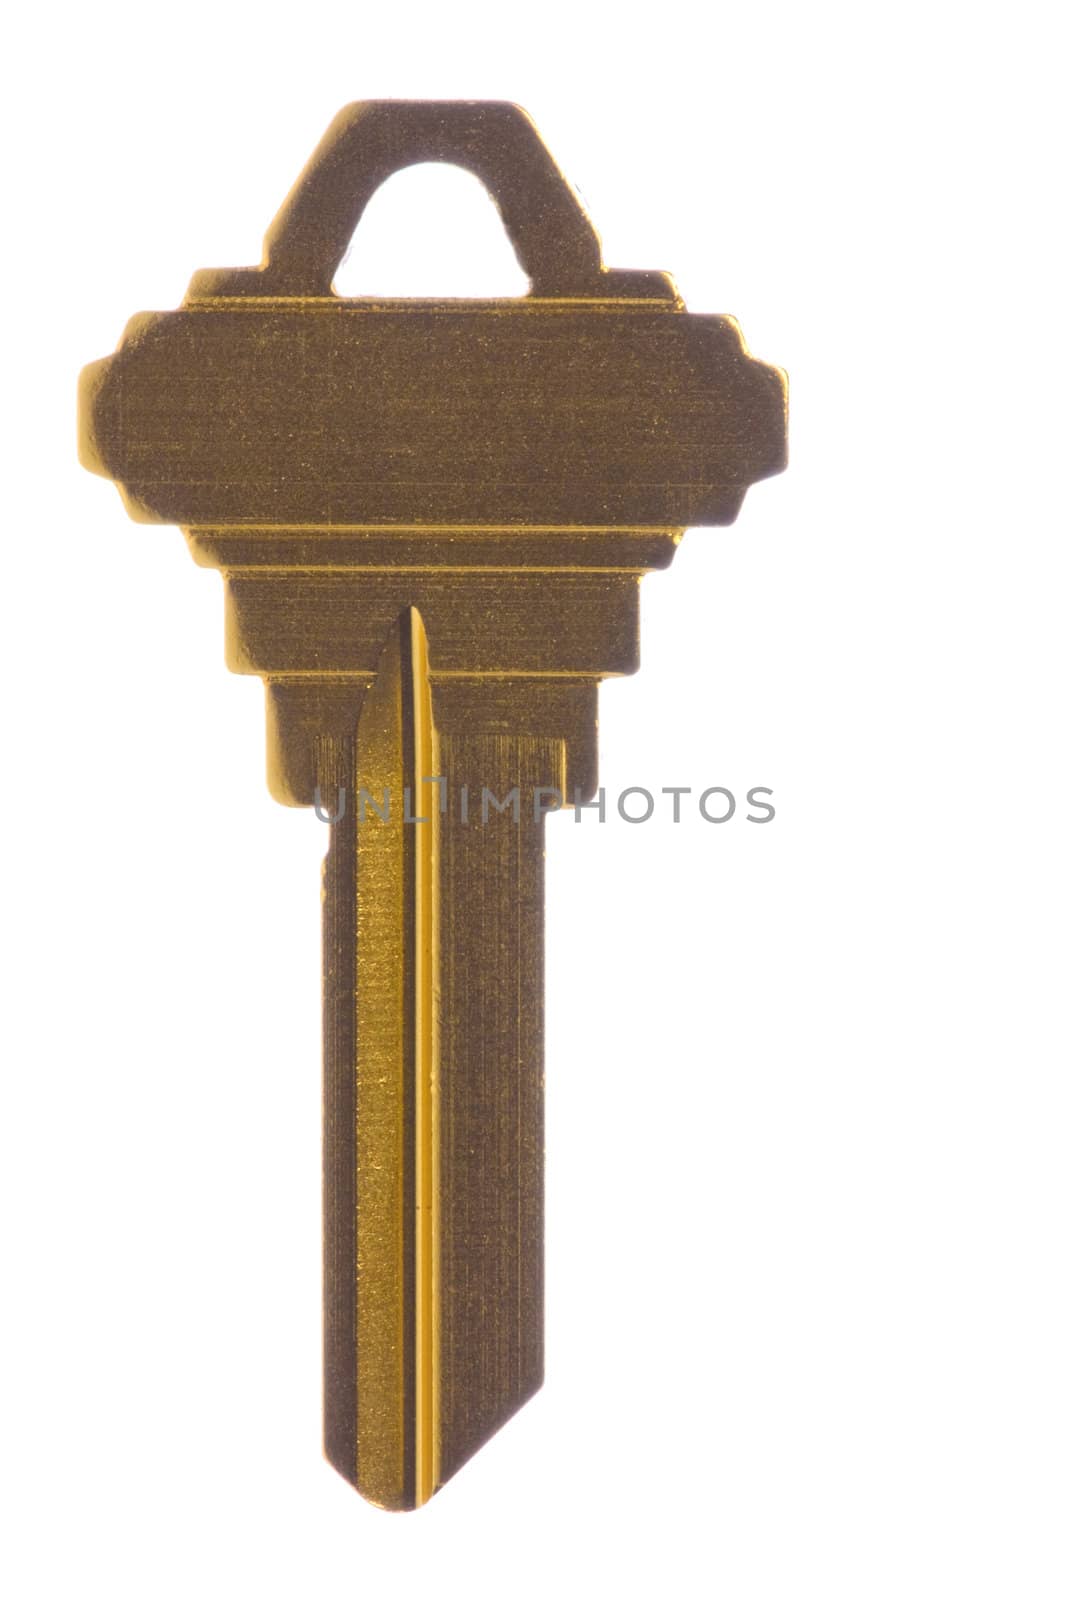 Isolated macro image of a metallic yellow blank key.